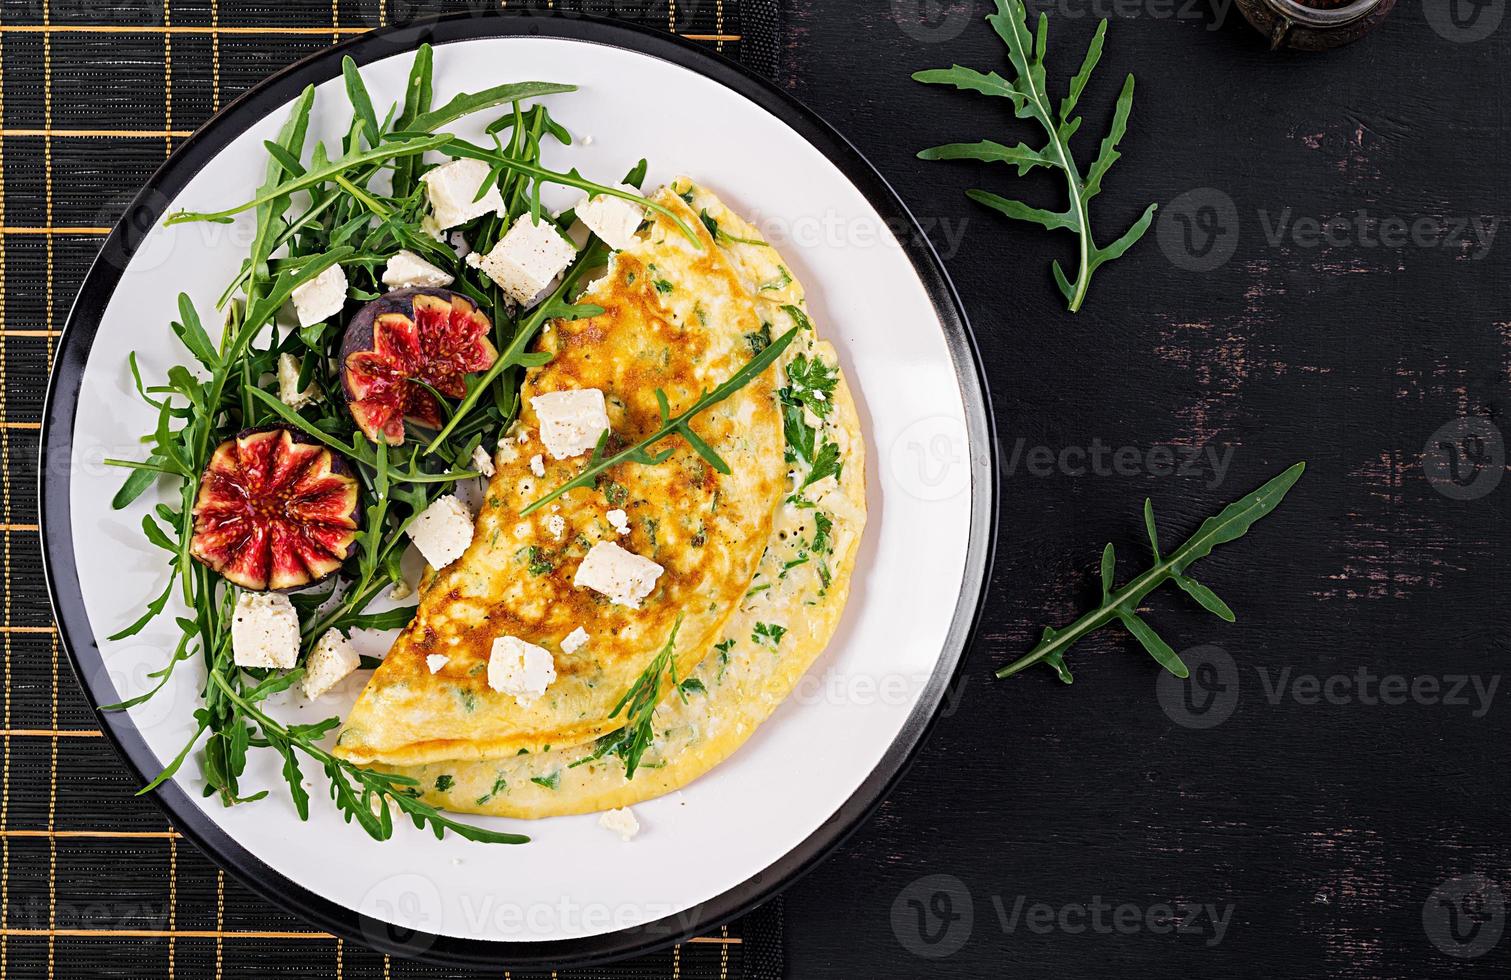 omelett med fetaost ost, persilja och sallad med fikon, arugula på vit tallrik. frittata - italiensk omelett. topp se. platt lägga. foto